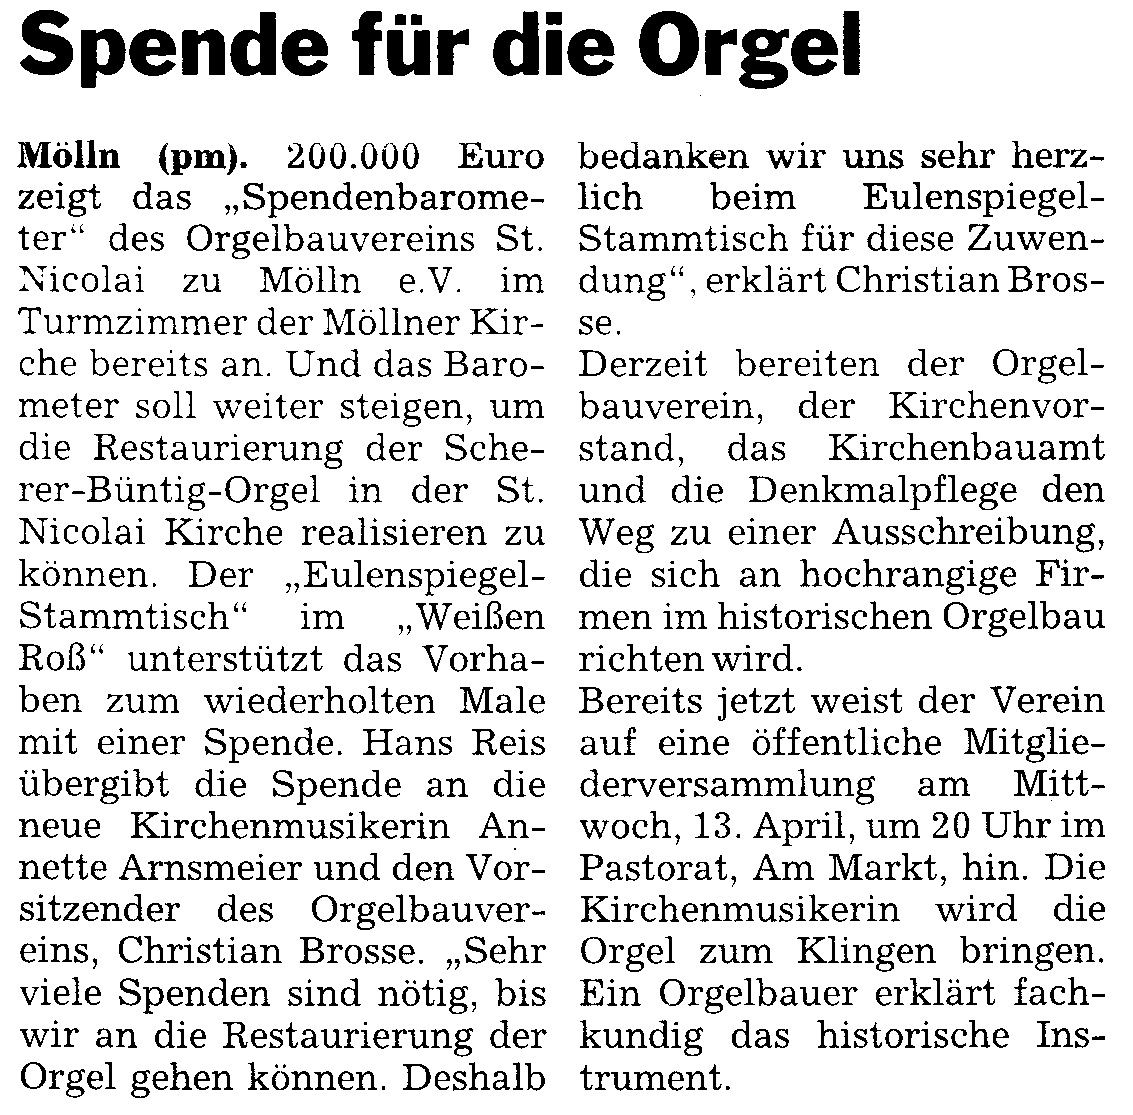 2011-03-16_moellner_markt_spende_fuer_die_orgel